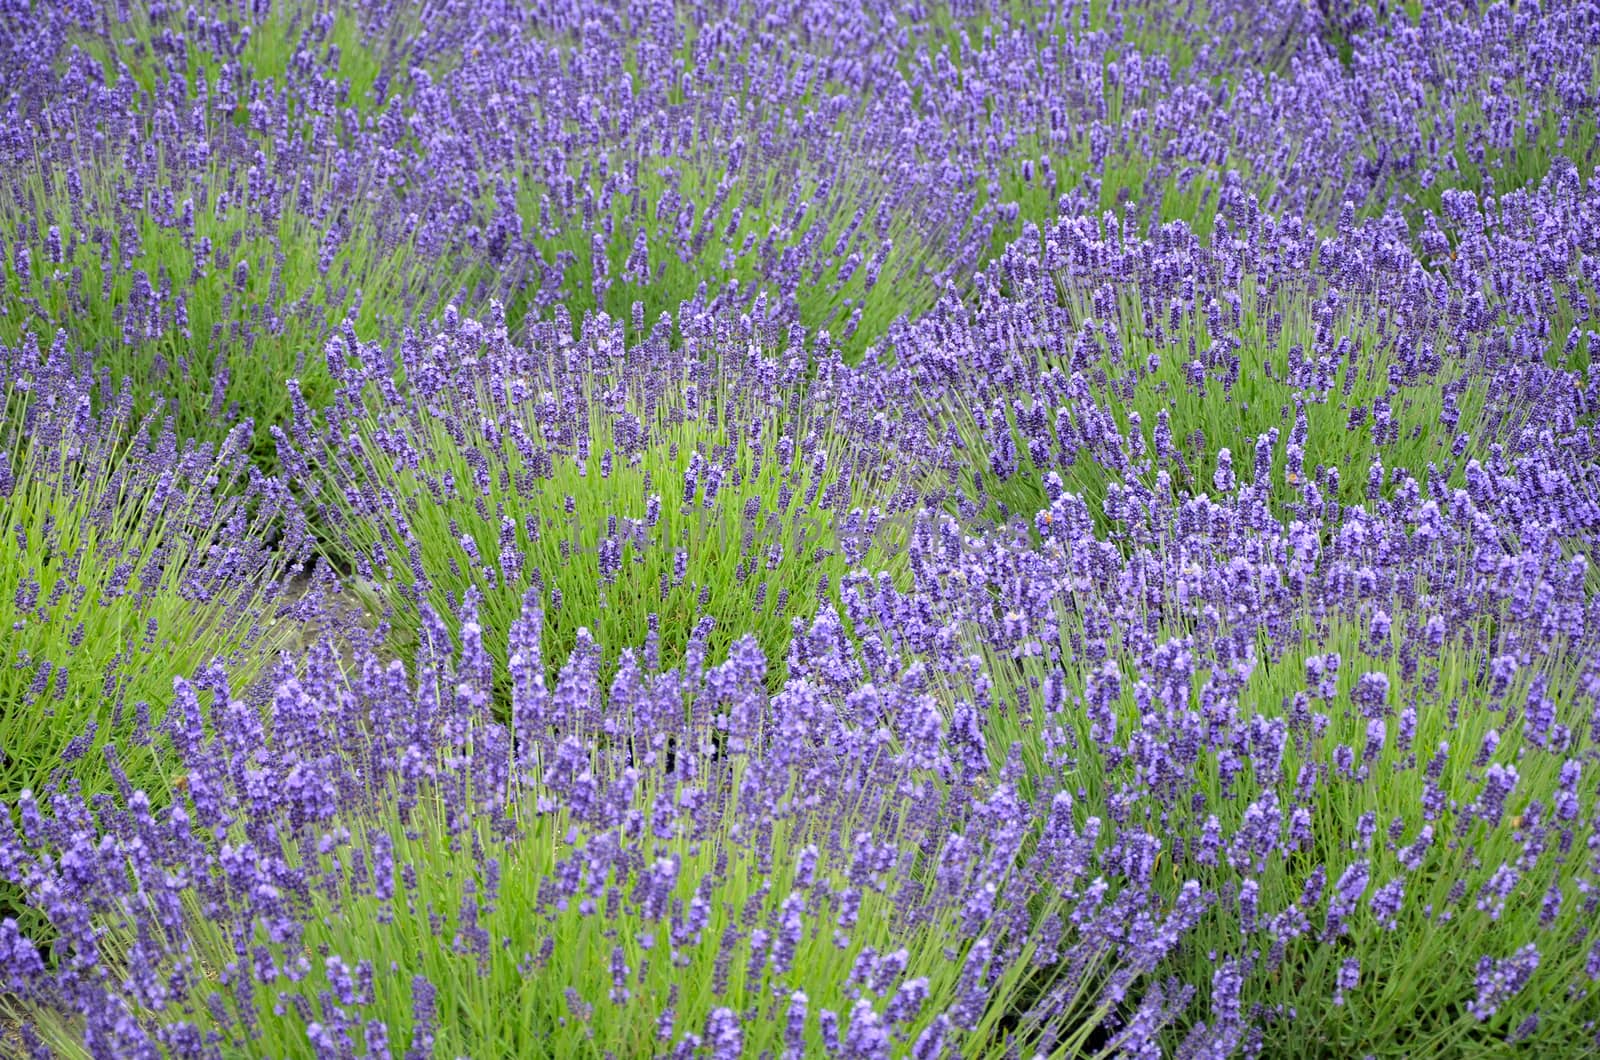 Beautiful purple lavender field in full bloom